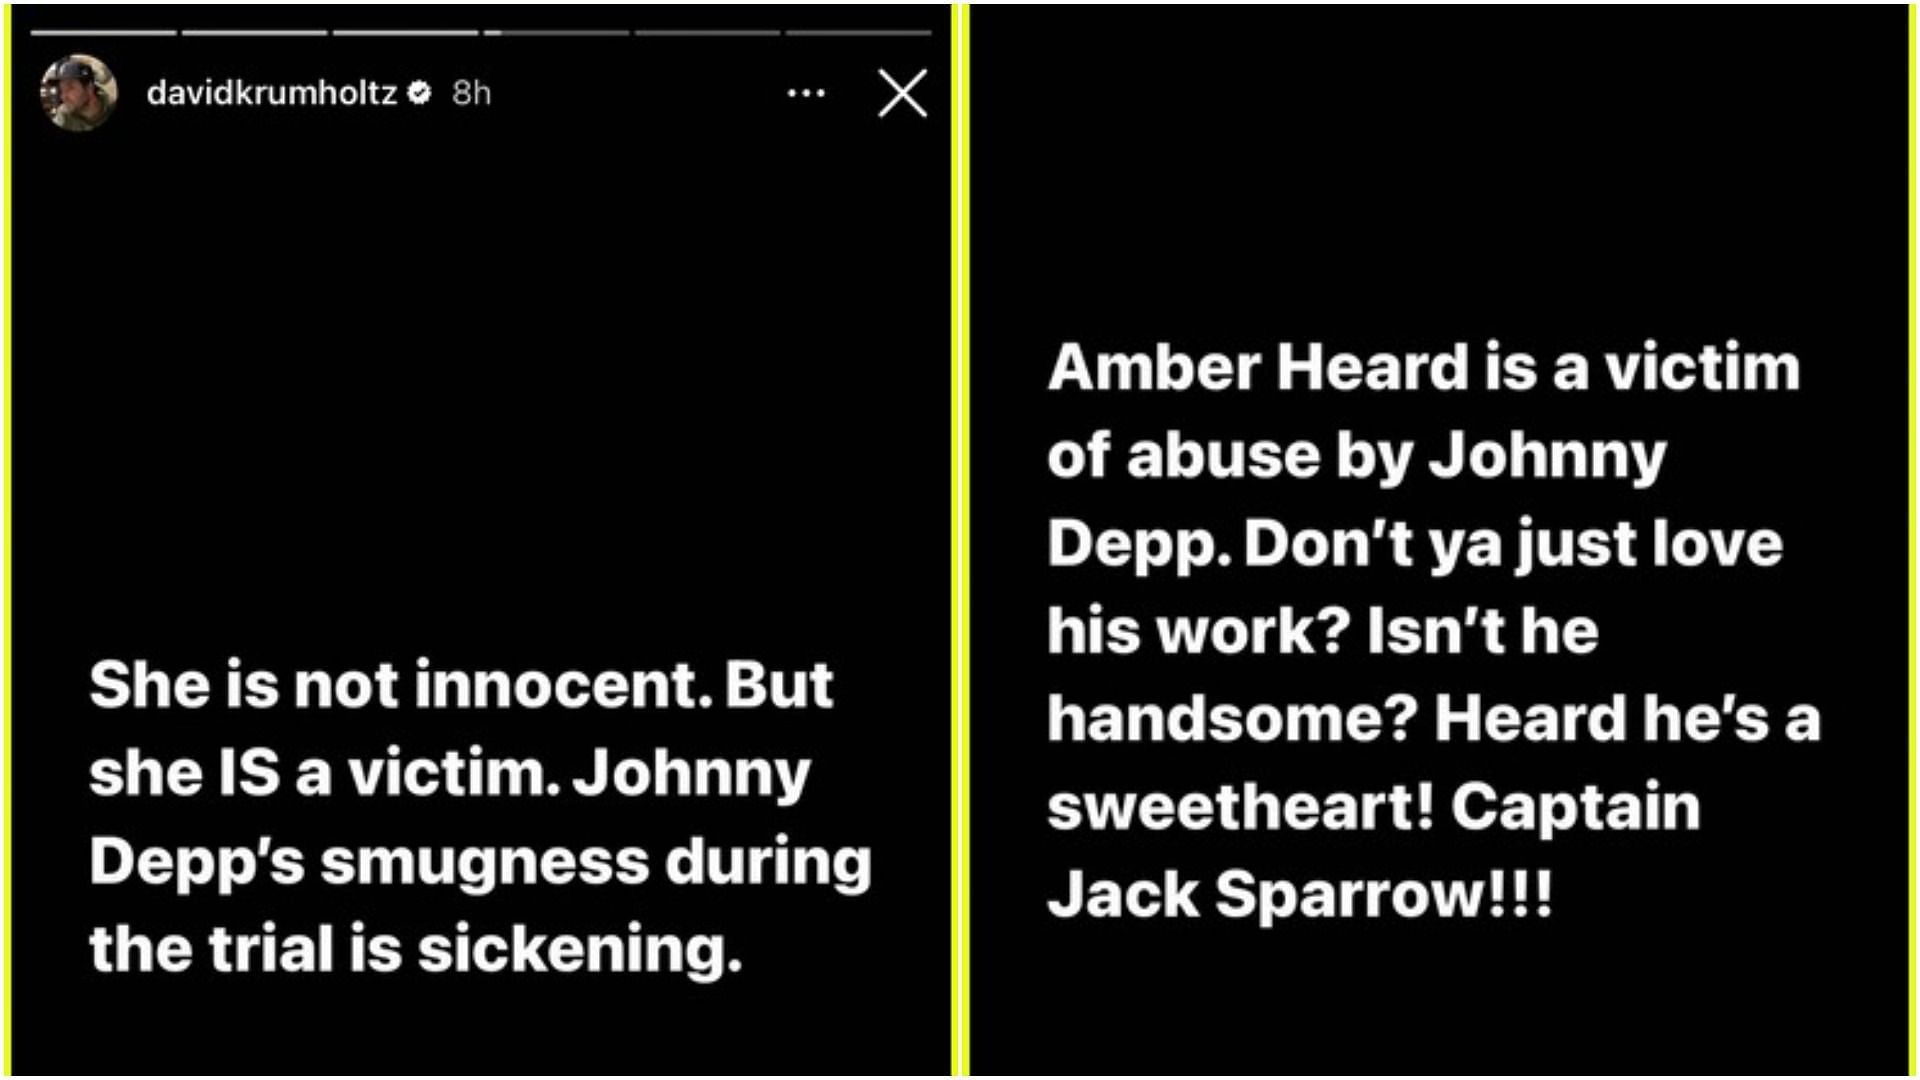 David Krumholtz supports Amber Heard (Image via davidkrumholtz/Instagram)